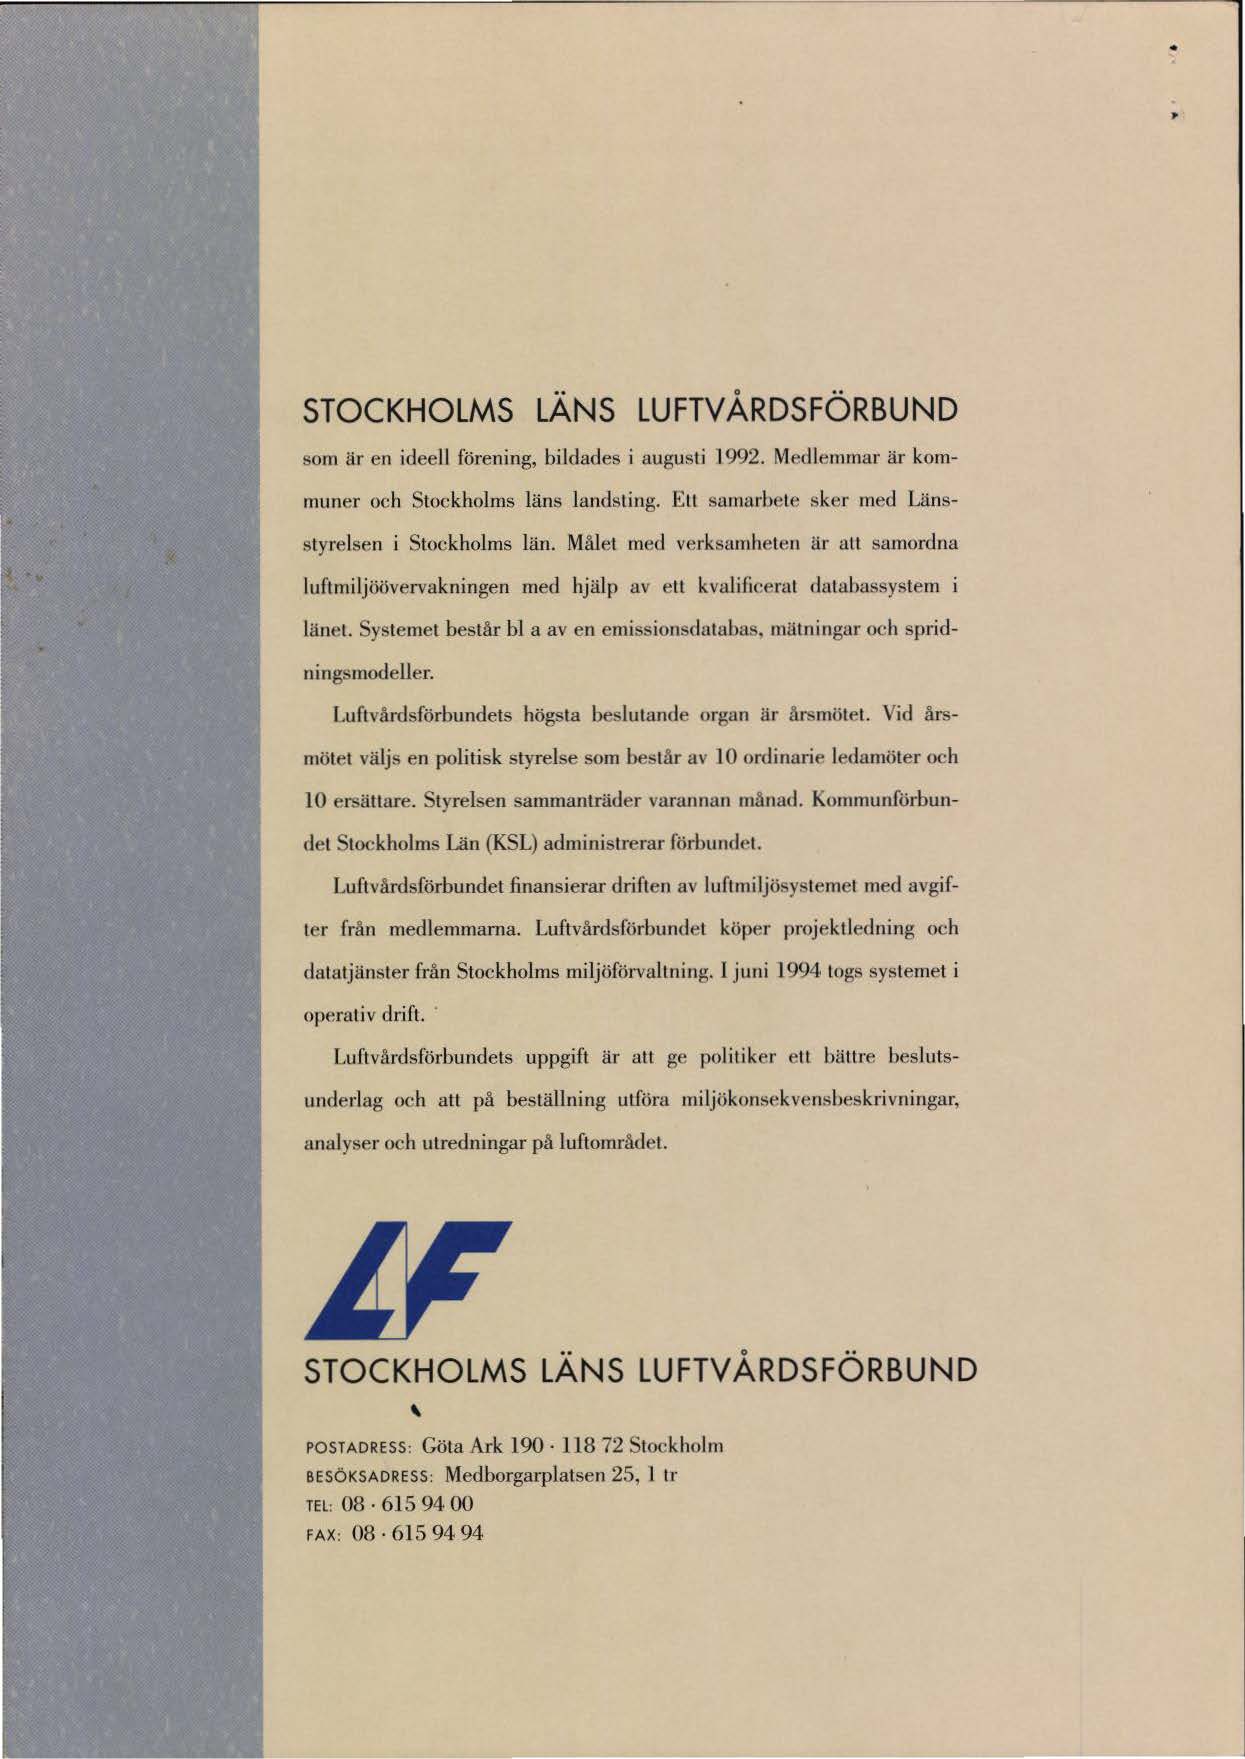 .. STOCKHOLMS LÄNS LUFTV ÅRDSFÖRBUND som är en ideell förening, bildades i augusti l 992. Medlemmar är kommuner och Stoekholms läns landsting. ELI samarbete sker med Länsstyrelsen i Stockholms län.